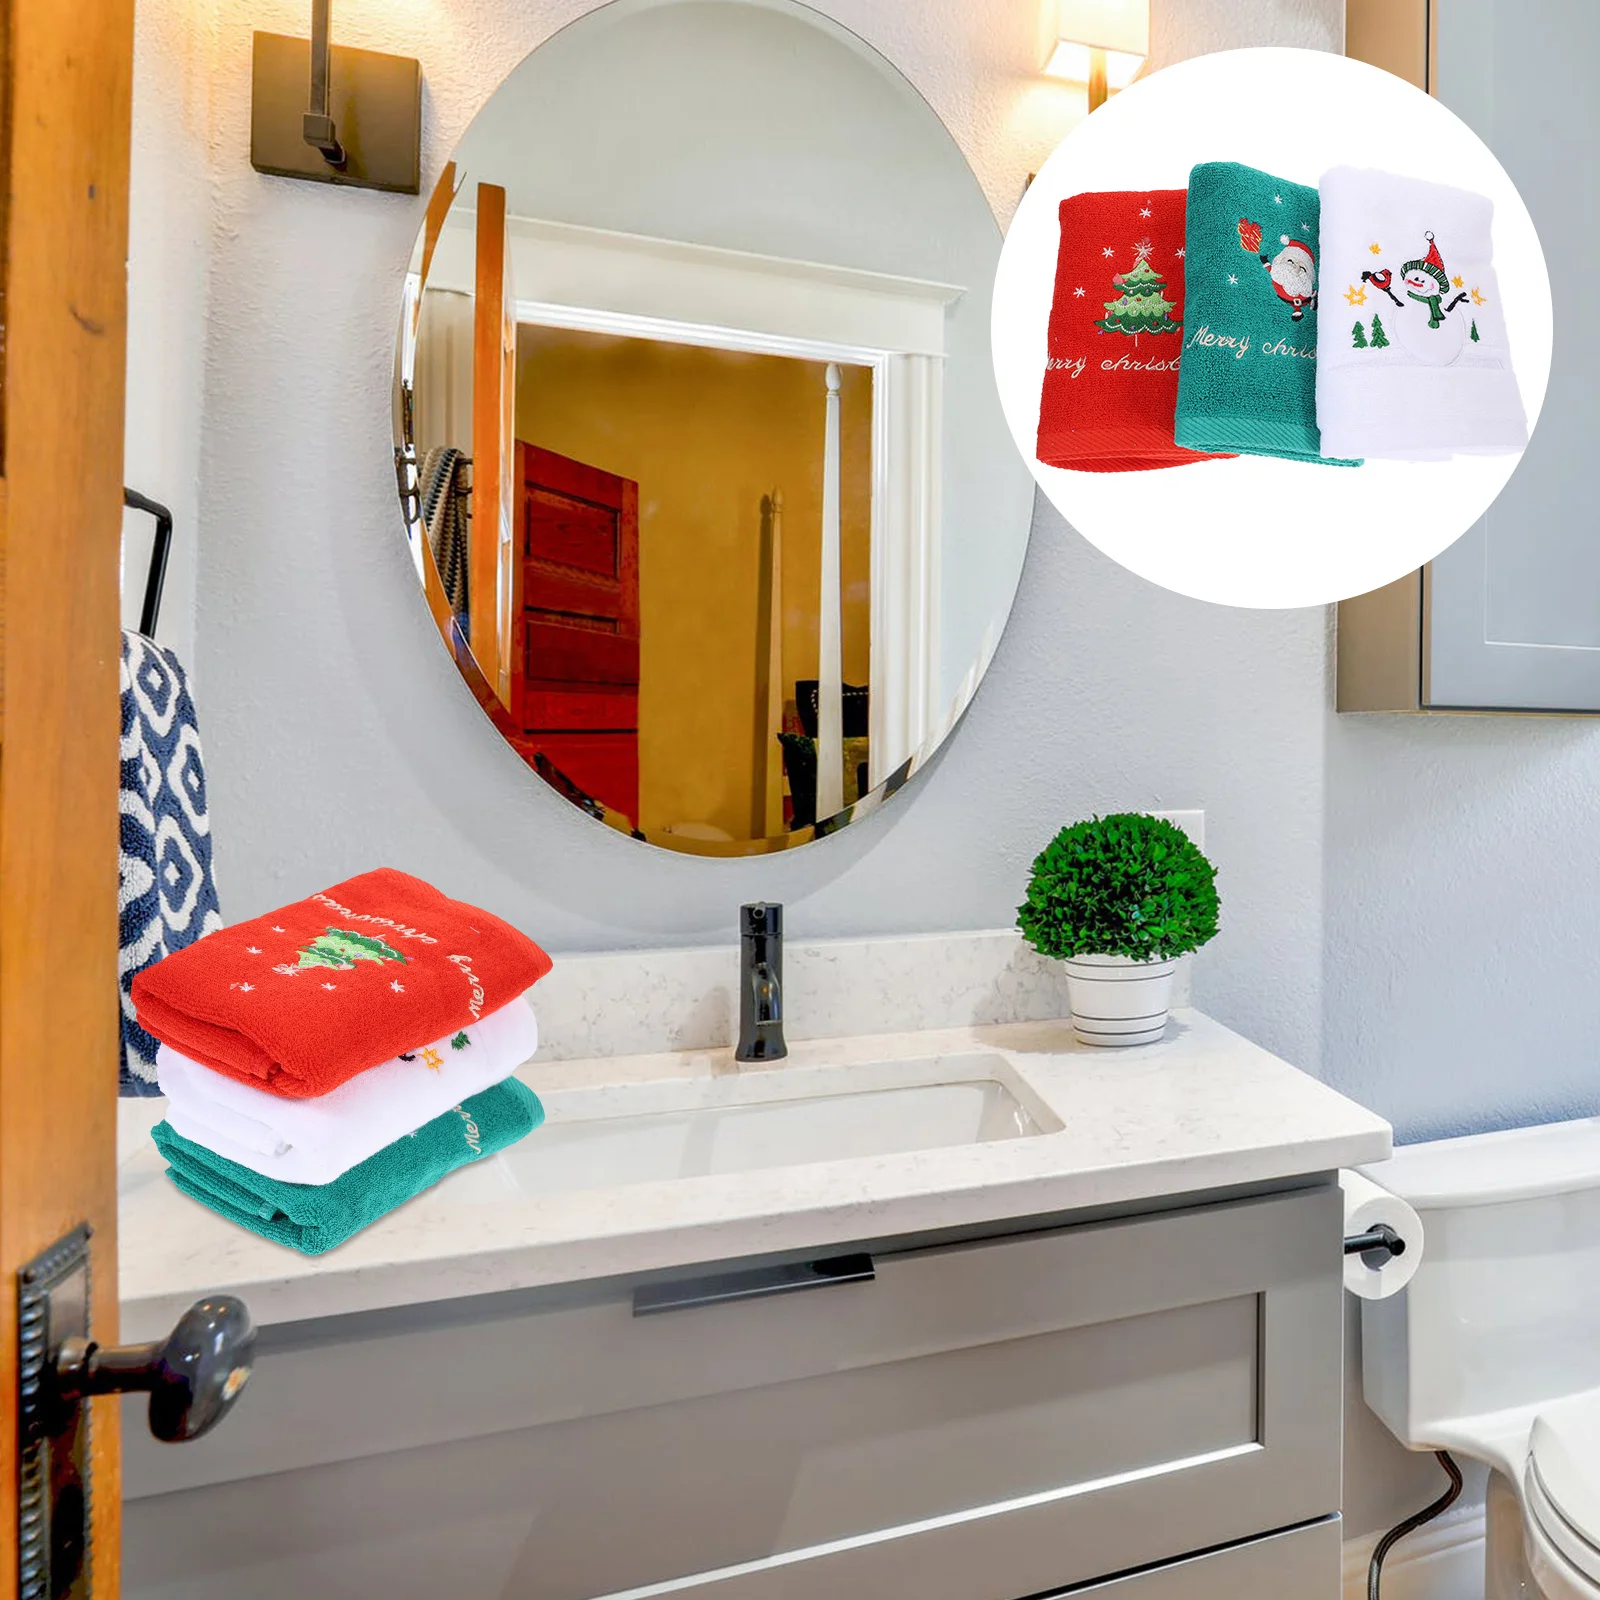 3 шт. салфетки для мытья посуды, праздничное полотенце, мочалка, удобный хлопок для рук,